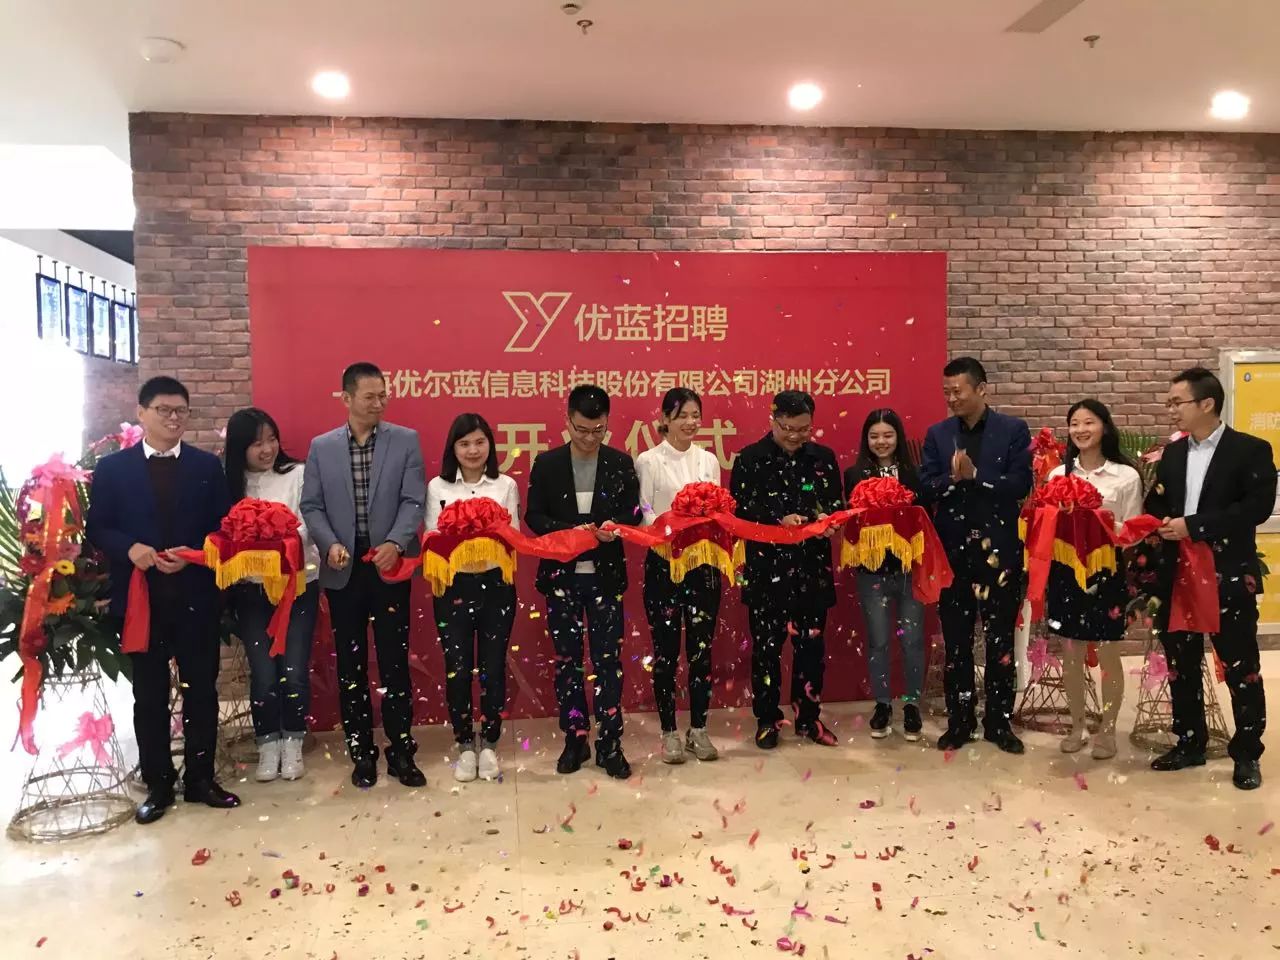 上海优尔蓝信息科技股份有限公司湖州分公司在产业园举行开业仪式